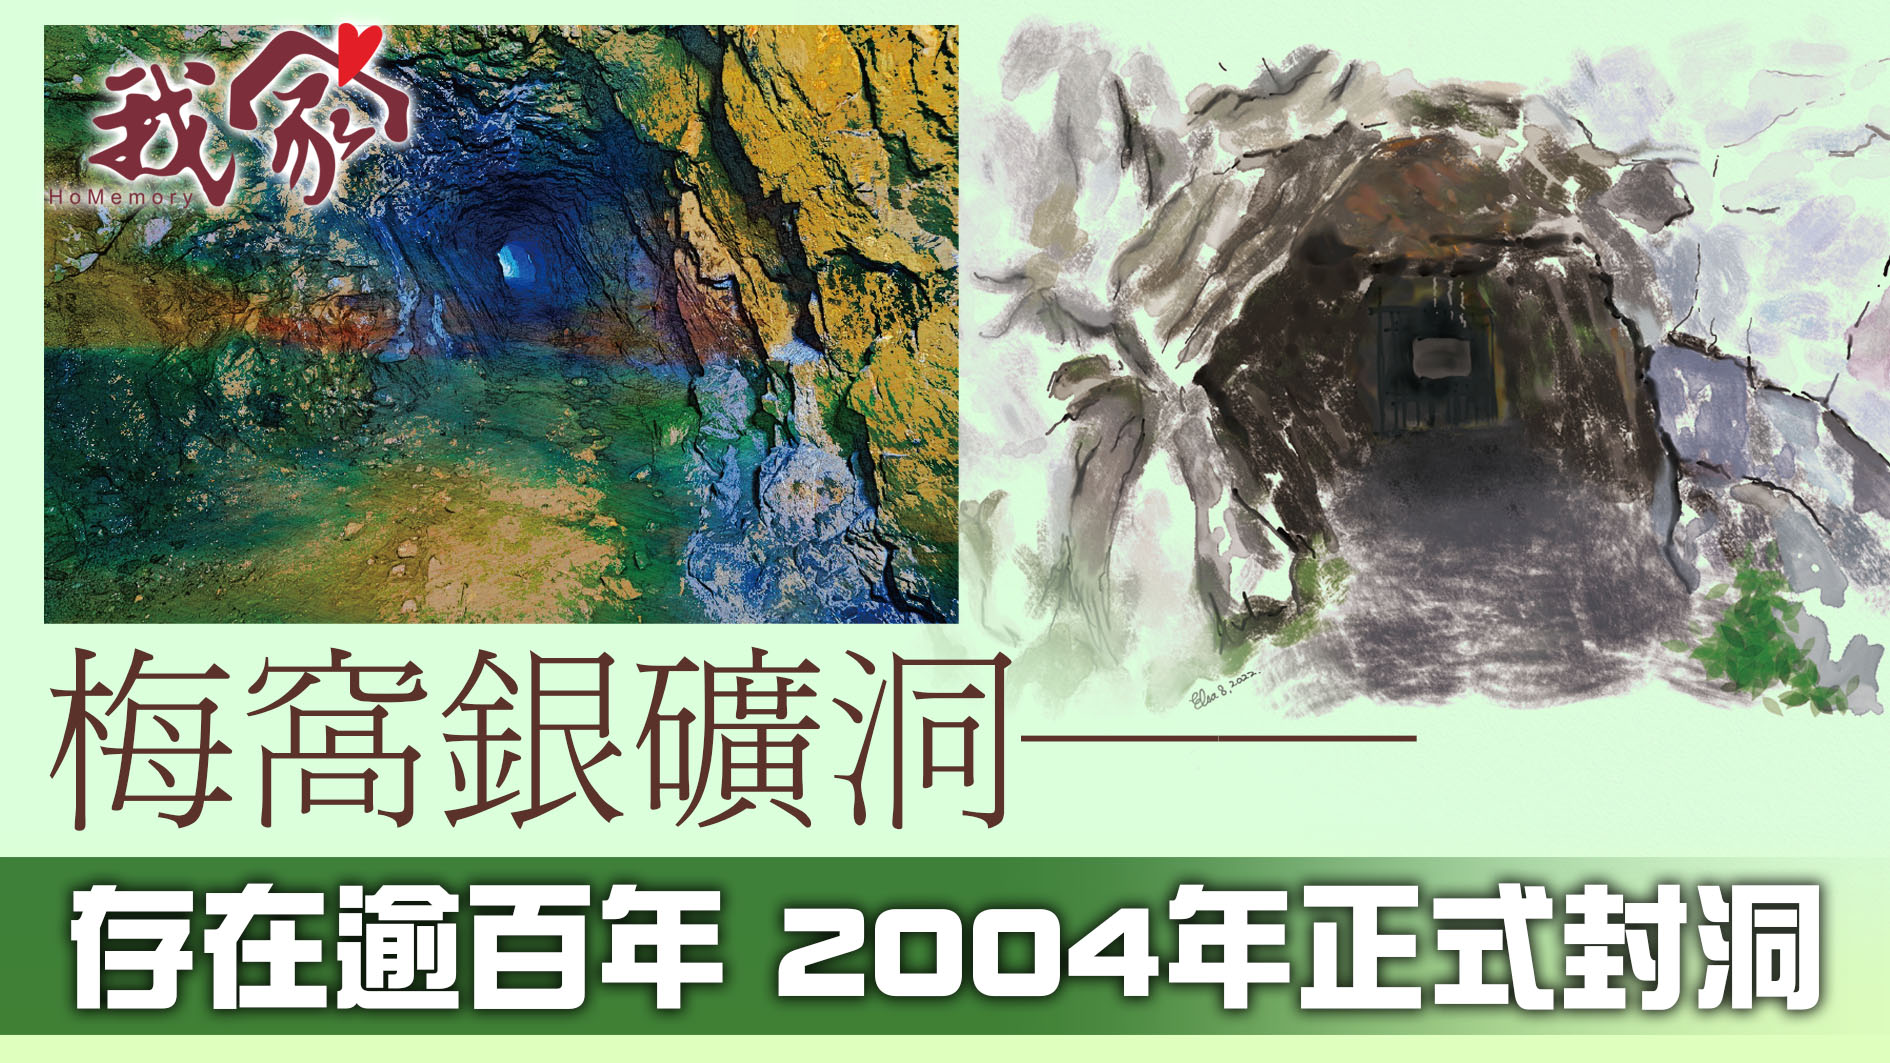 梅窩銀礦洞──存在逾百年 2004年正式封洞